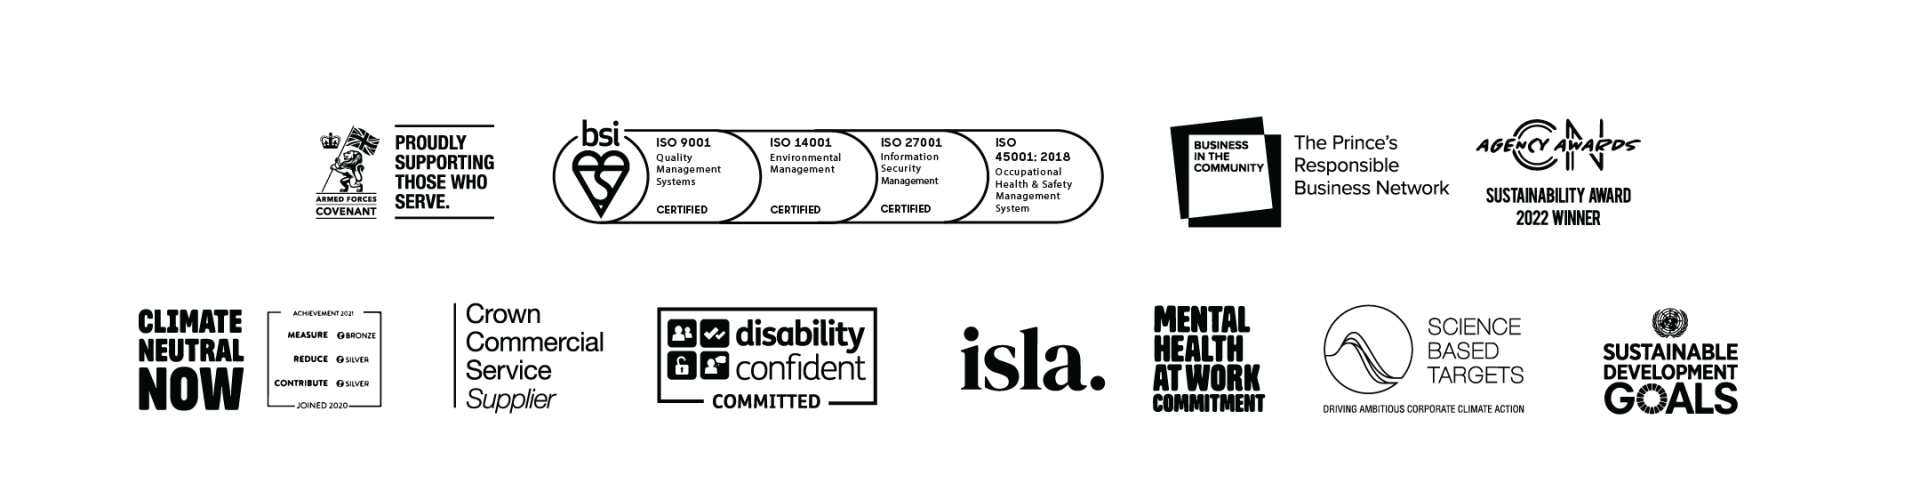 Sustainability accreditation logos